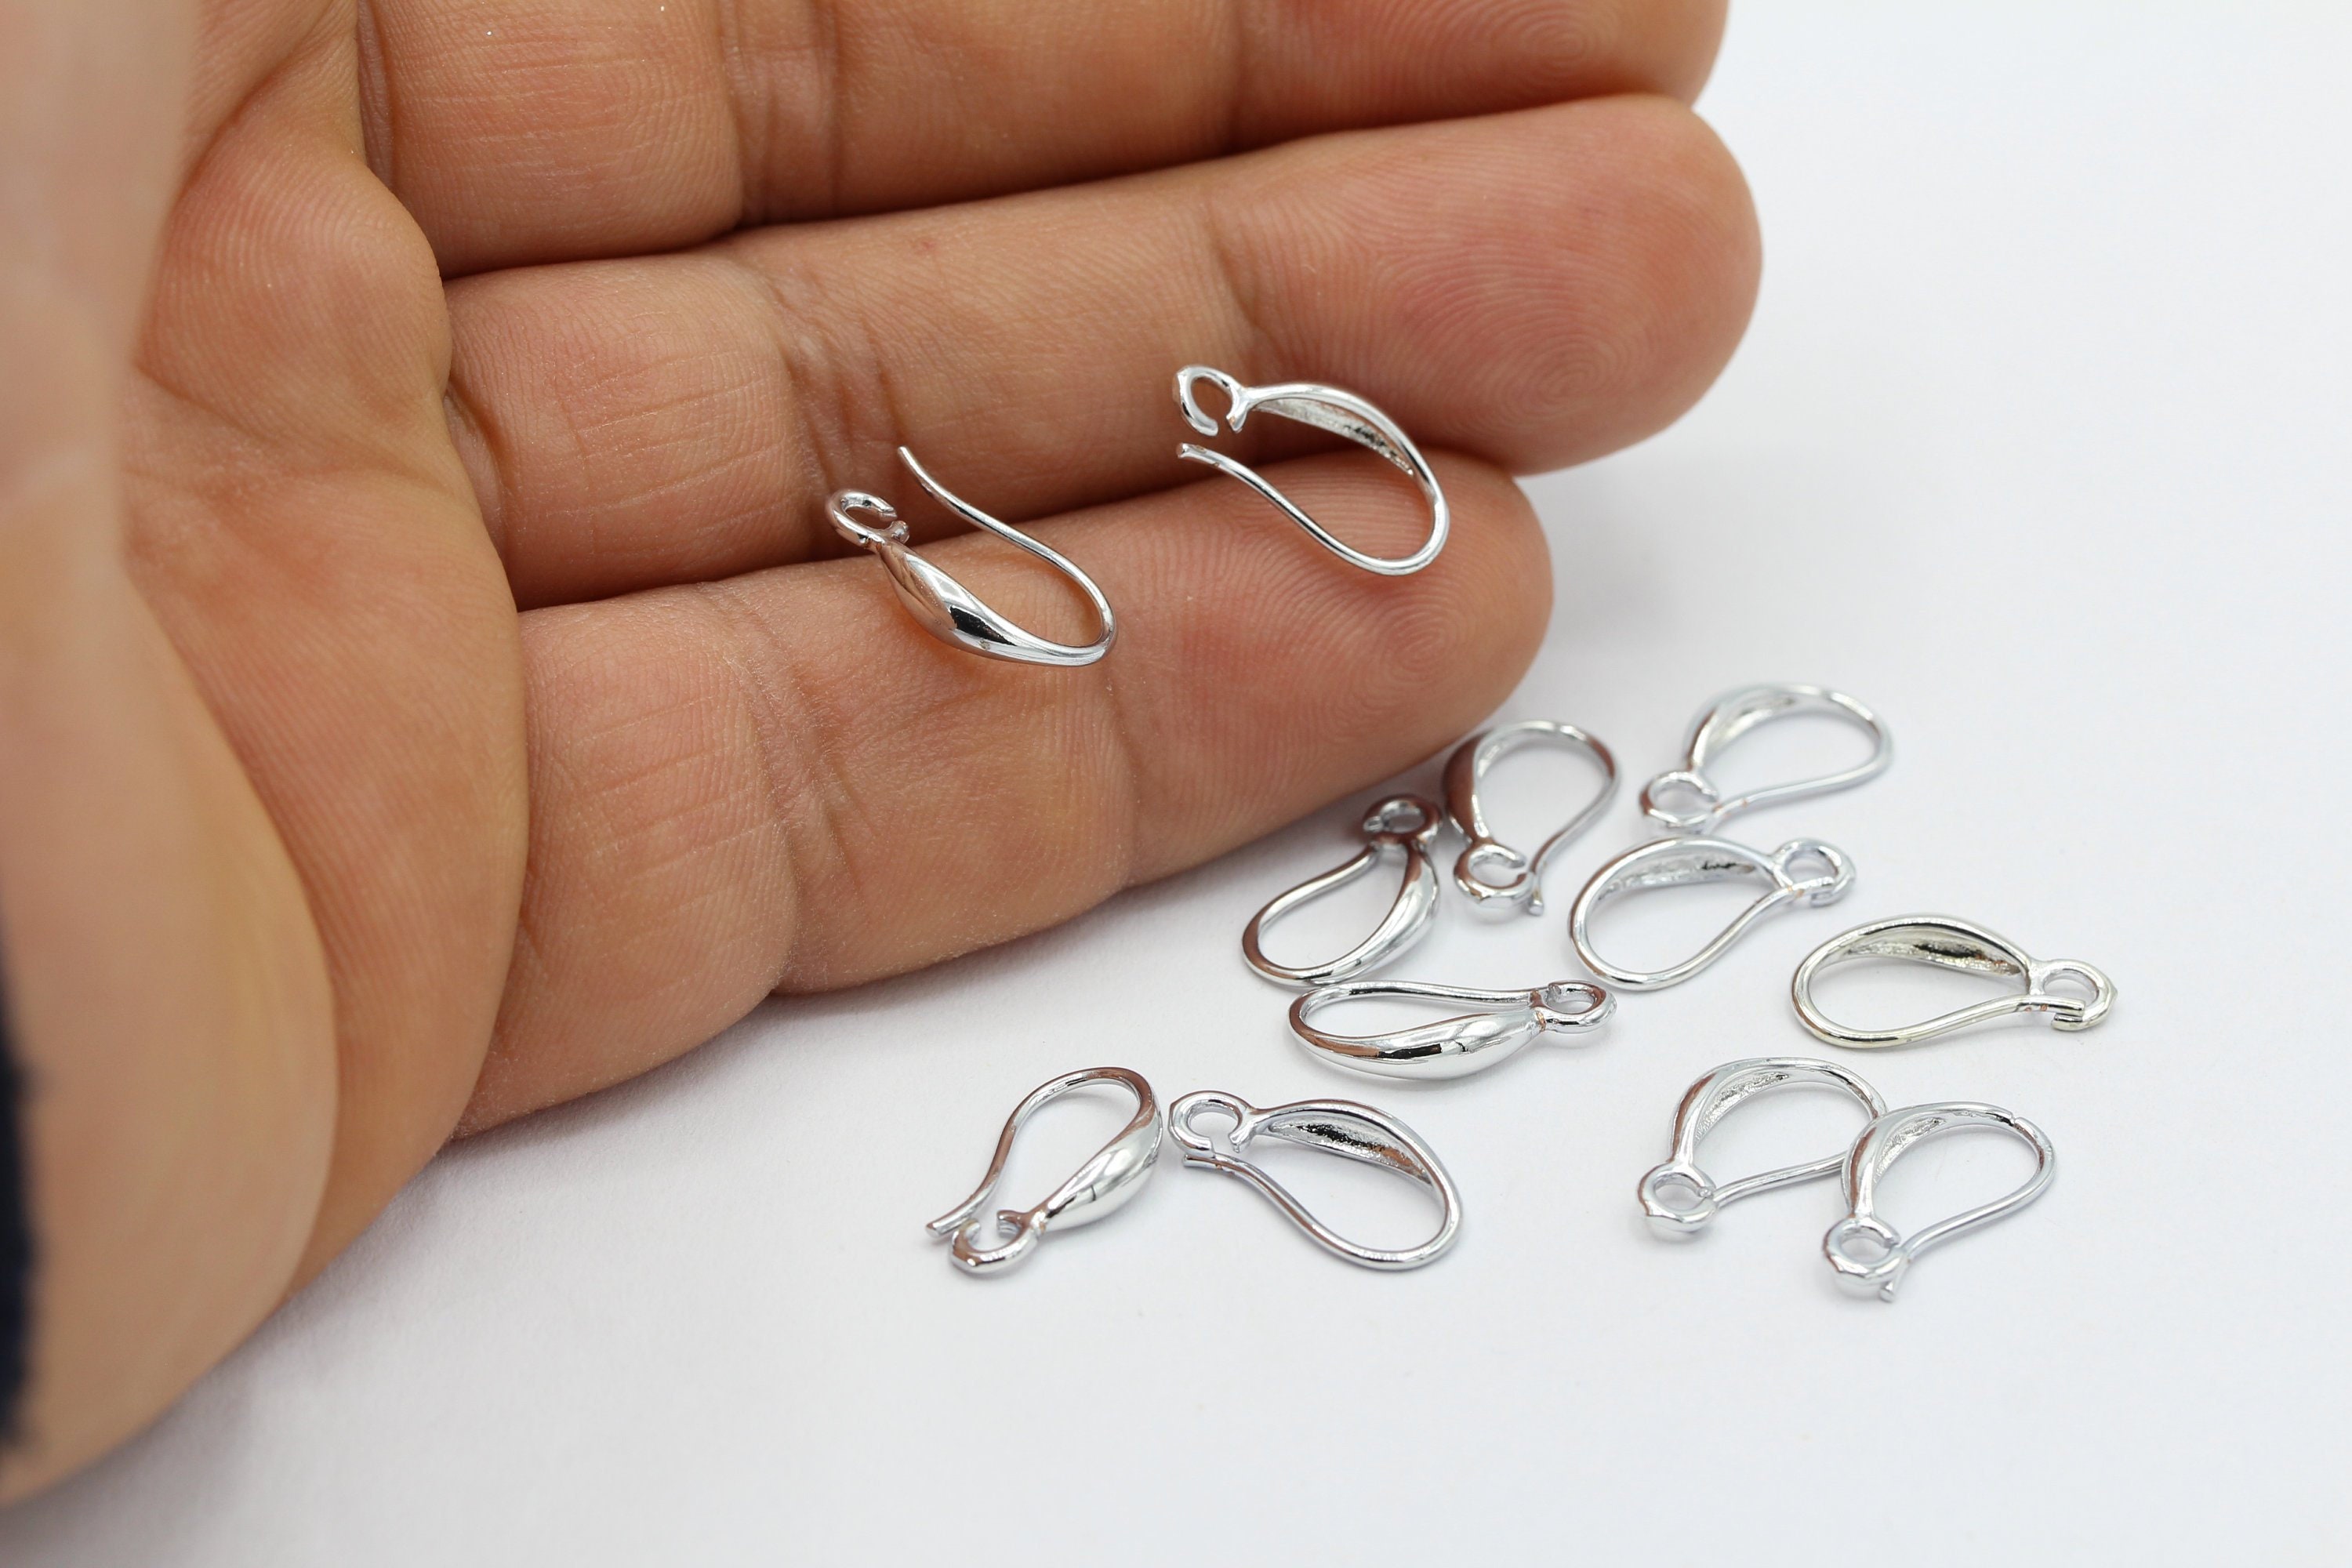 10-100pcs Silver Earring Hooks, 18K Rhodium Plated Brass Earwires